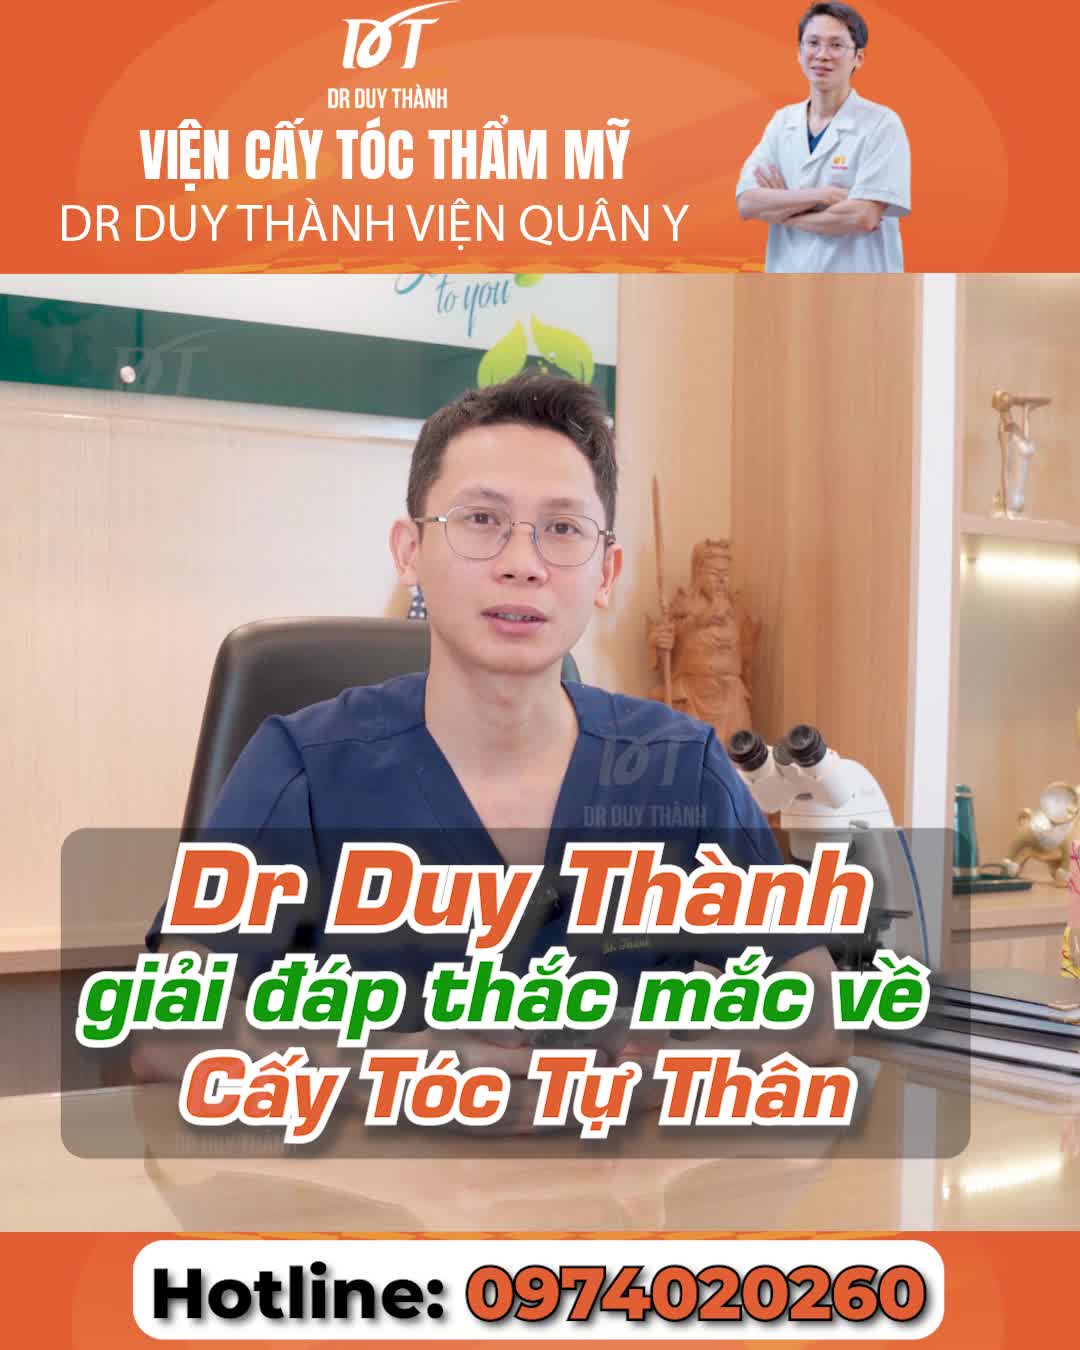 Những câu hỏi thường gặp về cấy tóc tự thân - Dr Duy Thành giải đáp